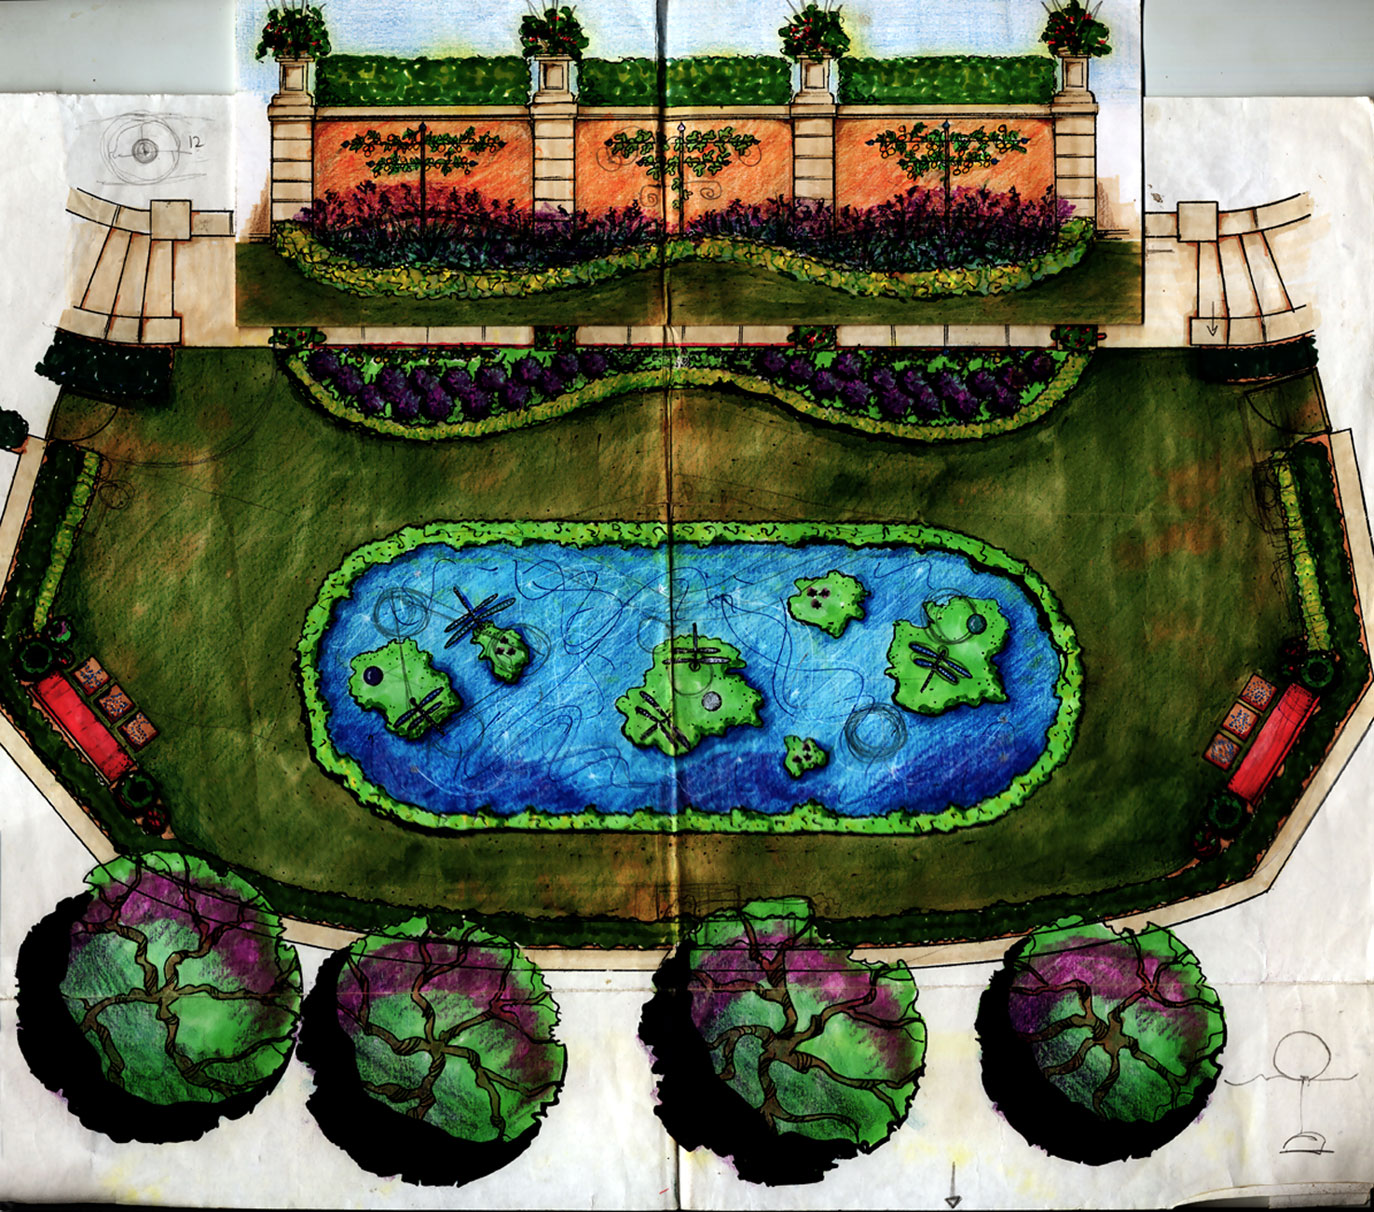 Pasadena Showcase Reflecting Garden: project design sketch